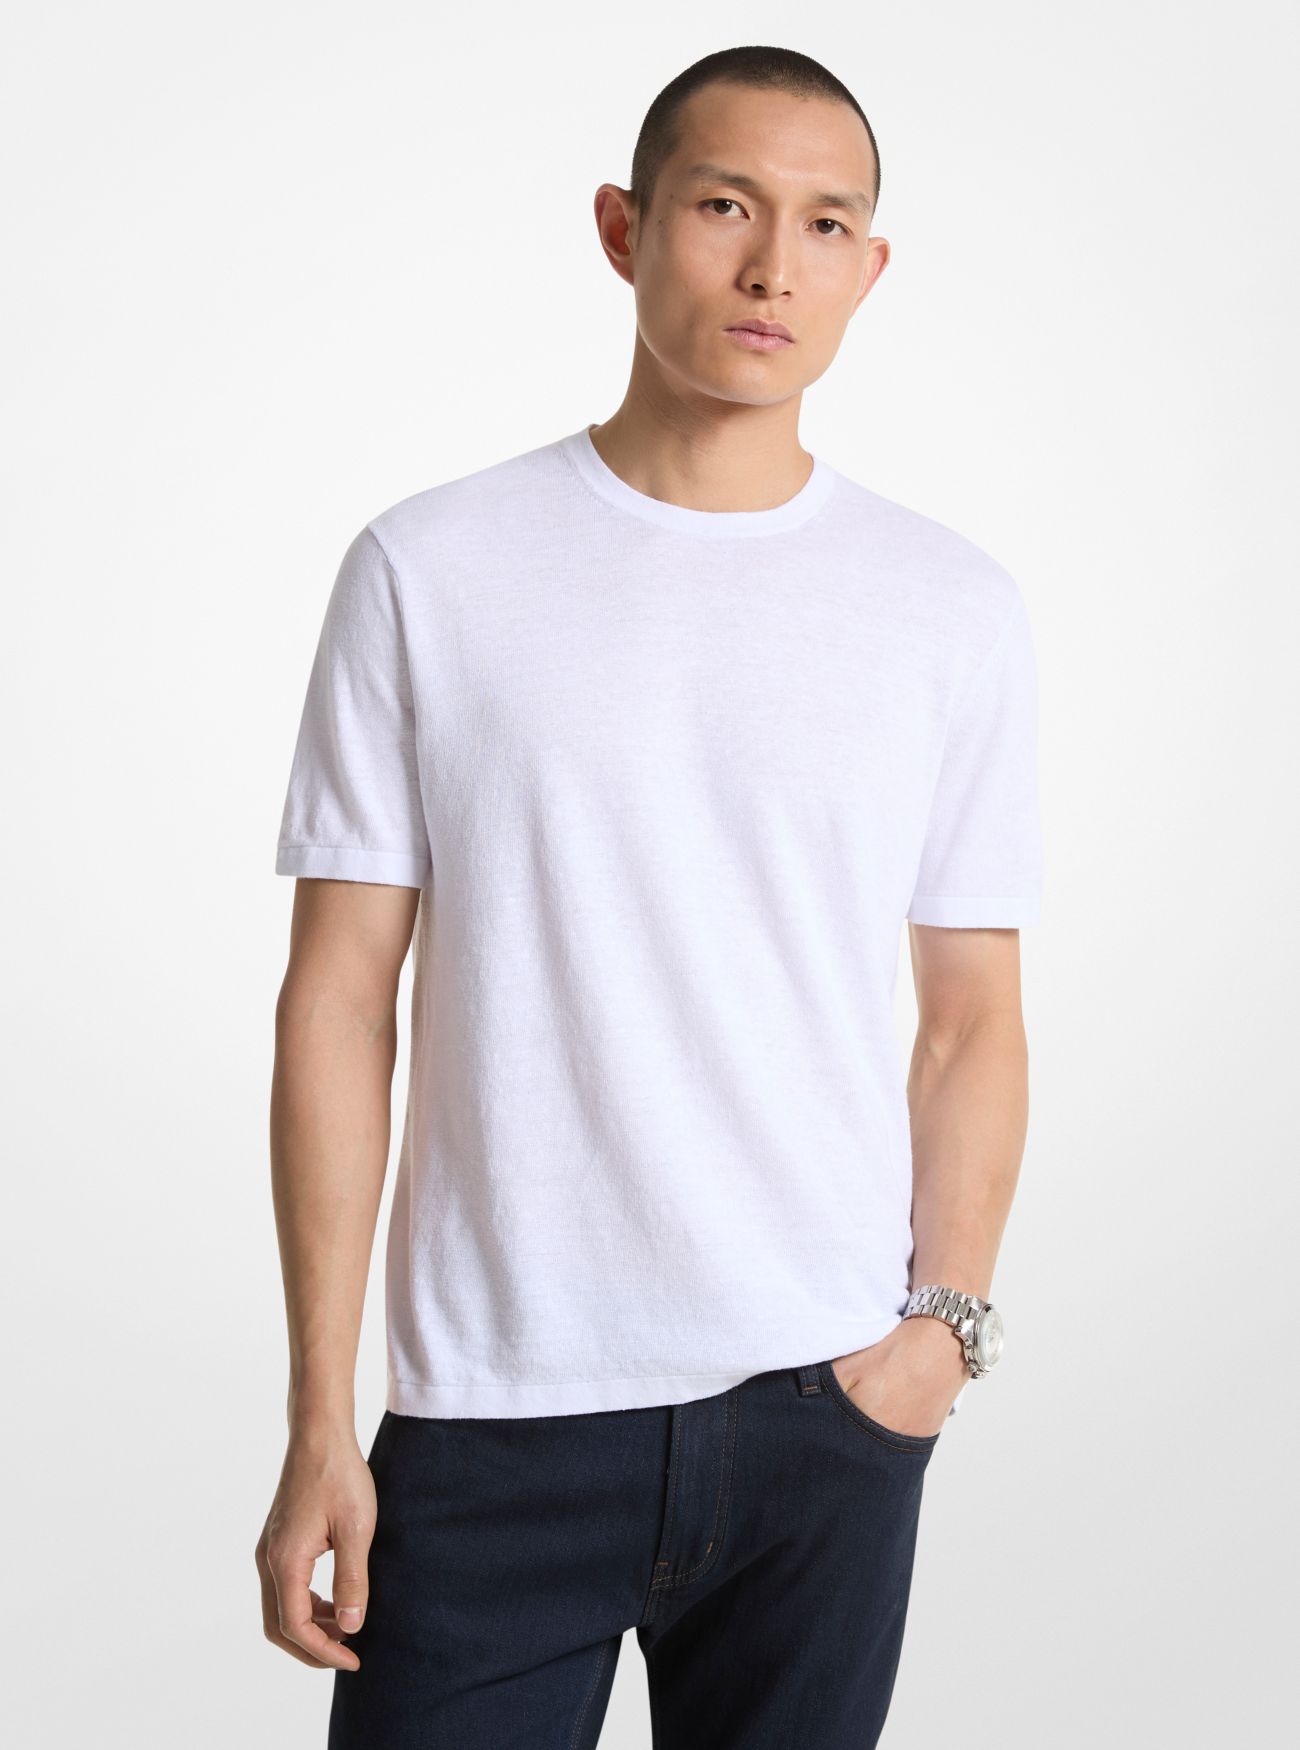 MK Linen Blend T-Shirt - White - Michael Kors